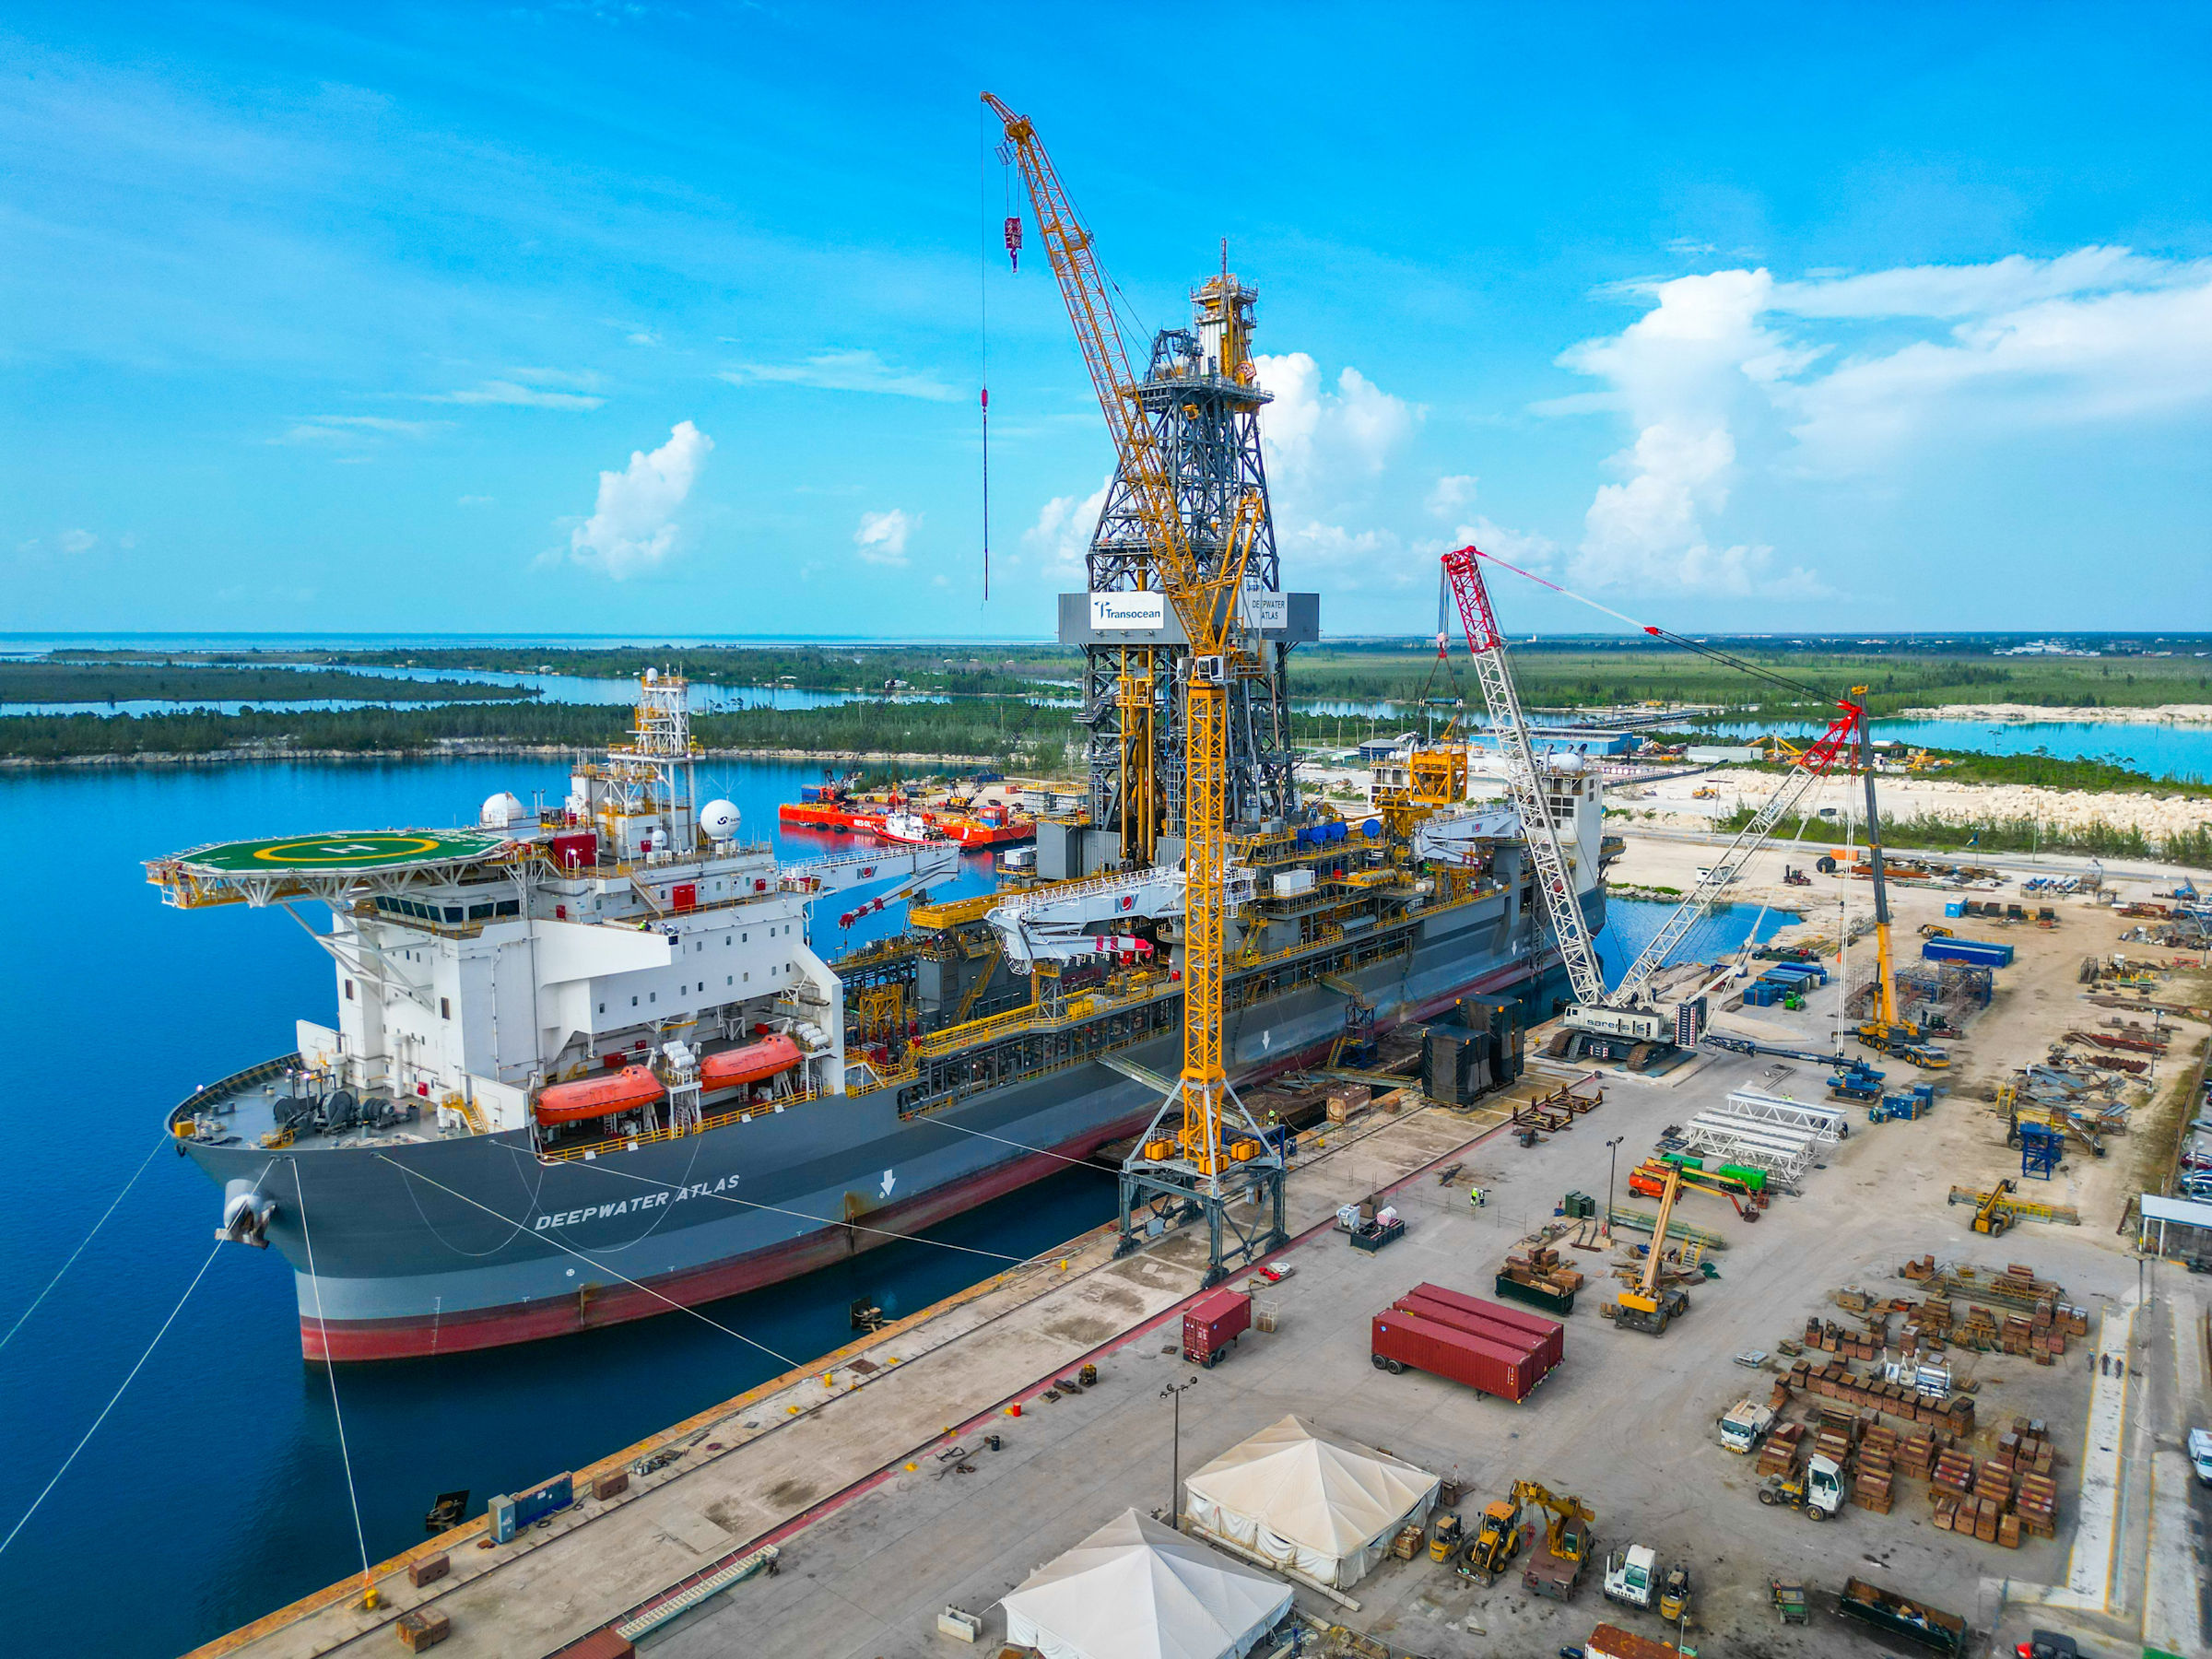 Maersk Installer at Grand Bahama Shipyard